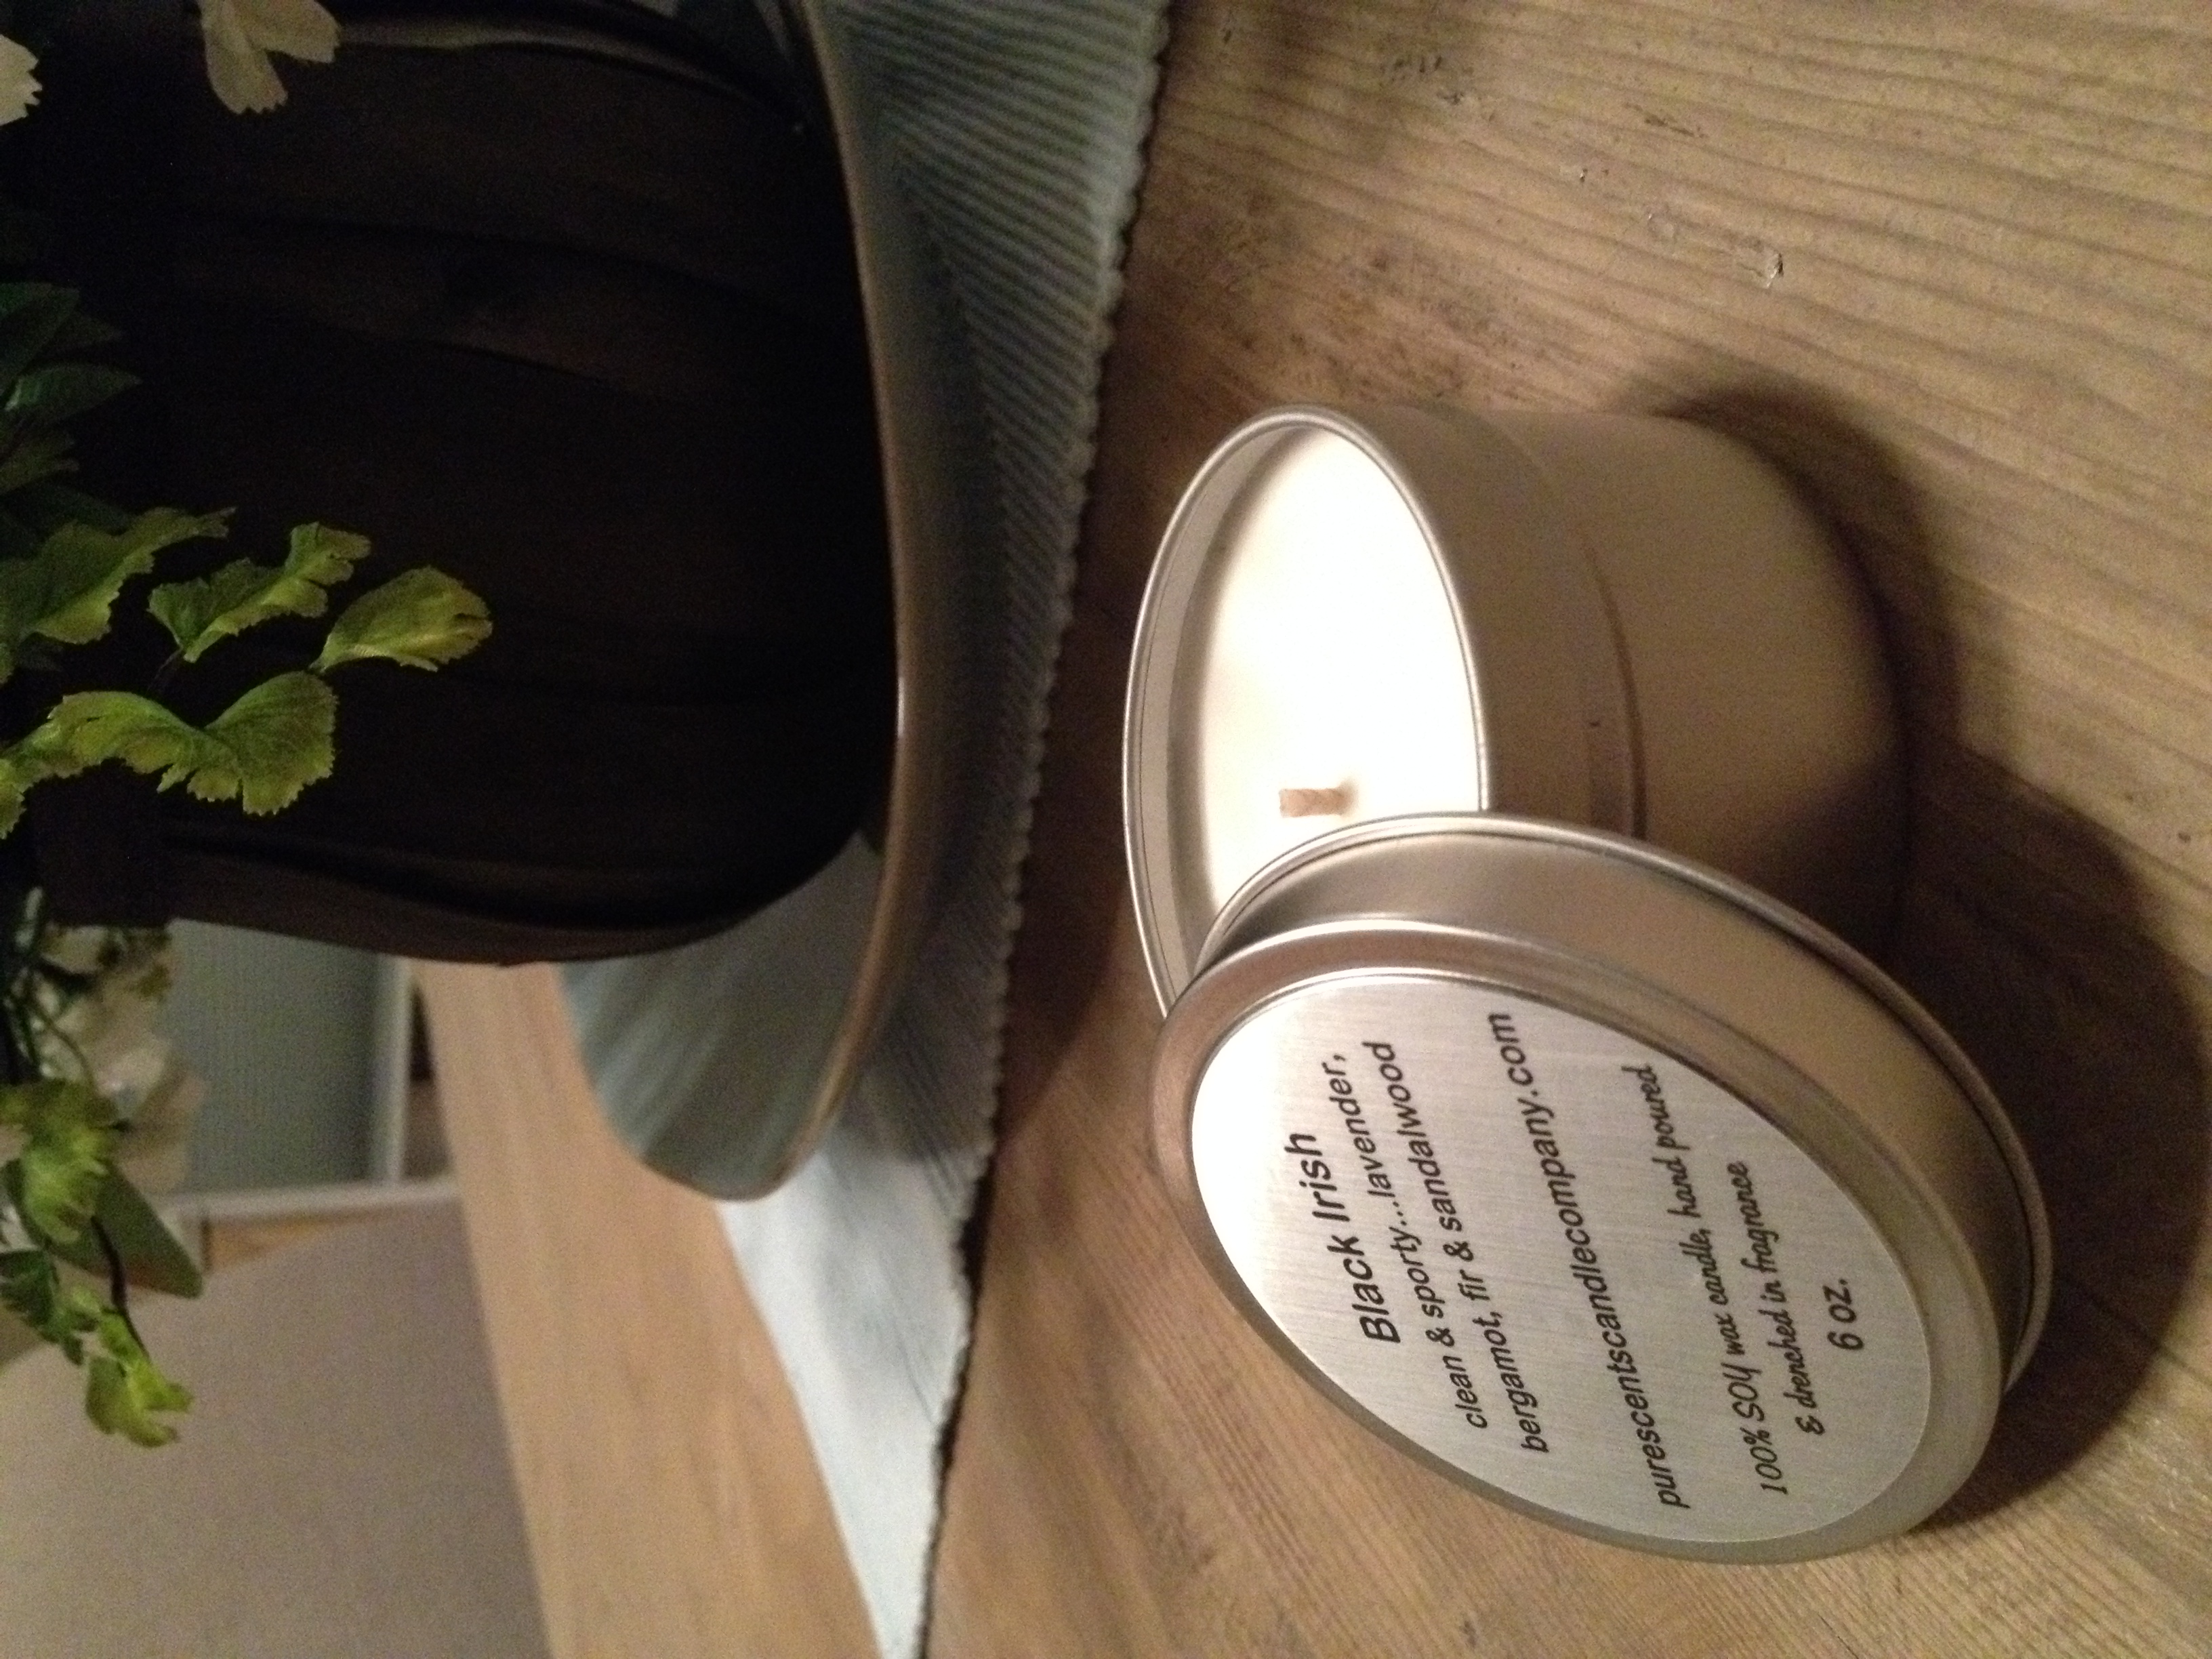 White Tea + Thyme Soy Wax Candle - Travel Tin